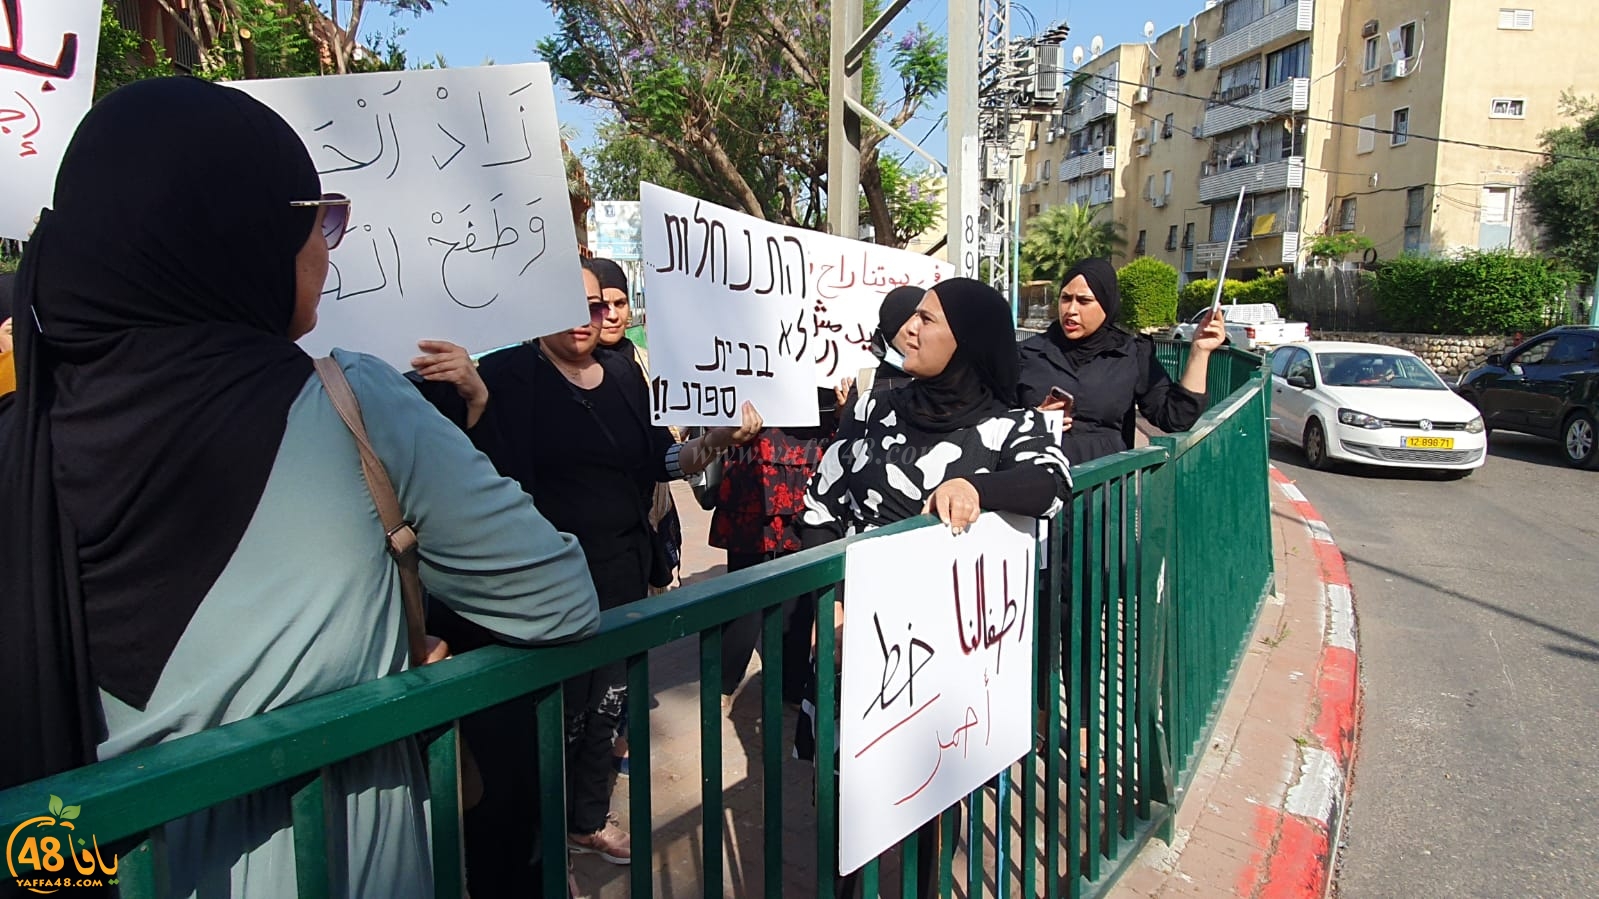 اللد: عربدات المستوطنين وتظاهرة بالرازي رفضاً لمظاهر حمل السلاح بالمدينة